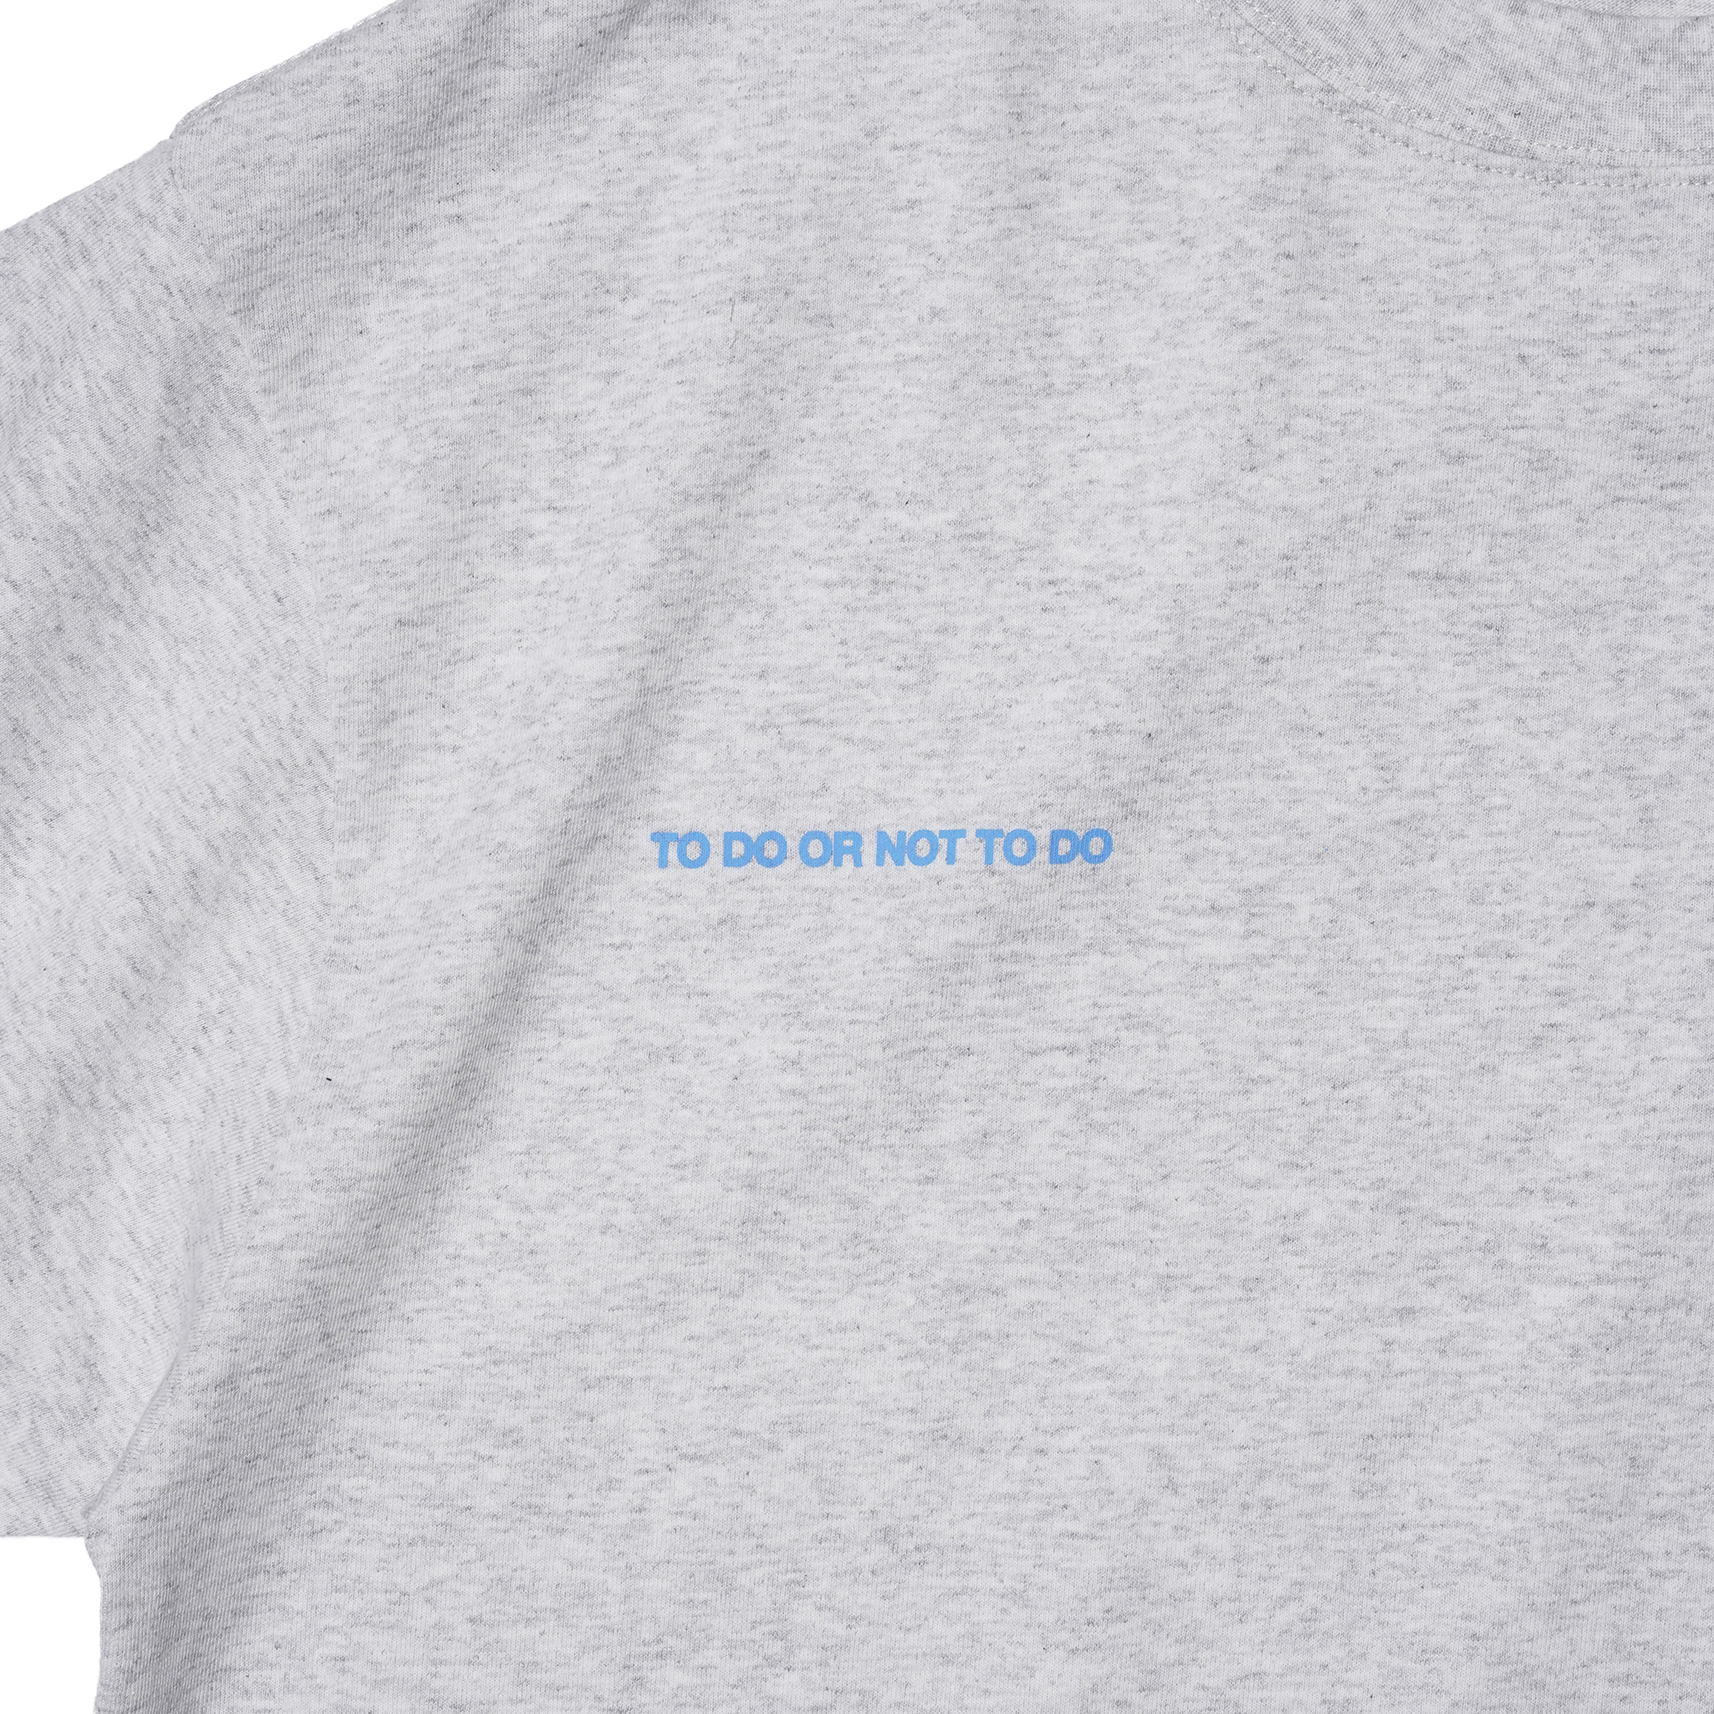 ‘TO ZERO’ logo print T-Shirt